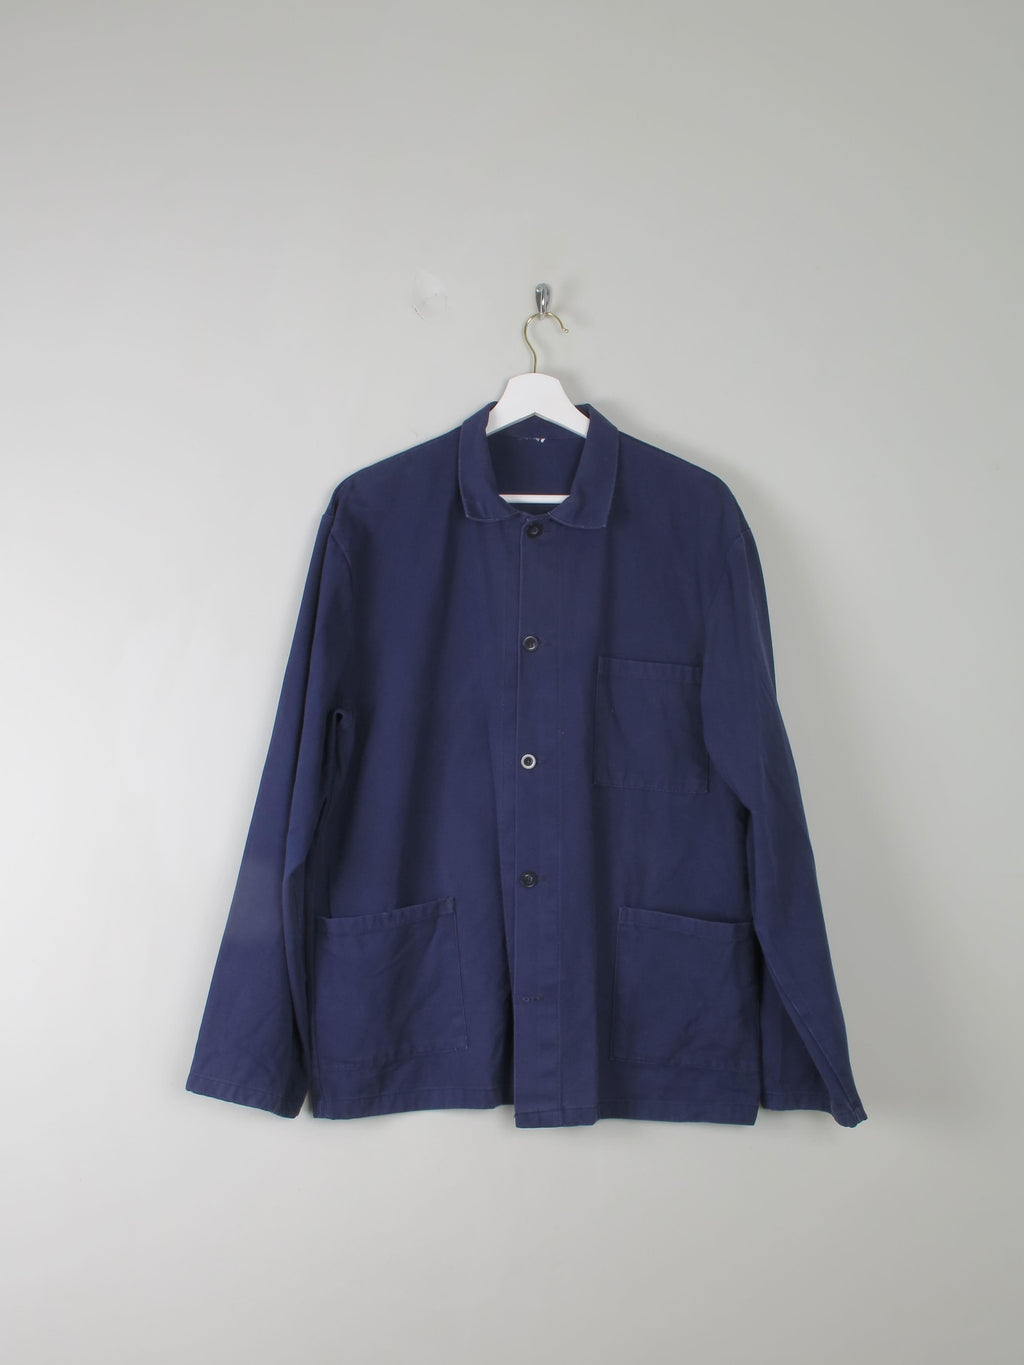 Men's Vintage Blue Work Jacket S/M - The Harlequin